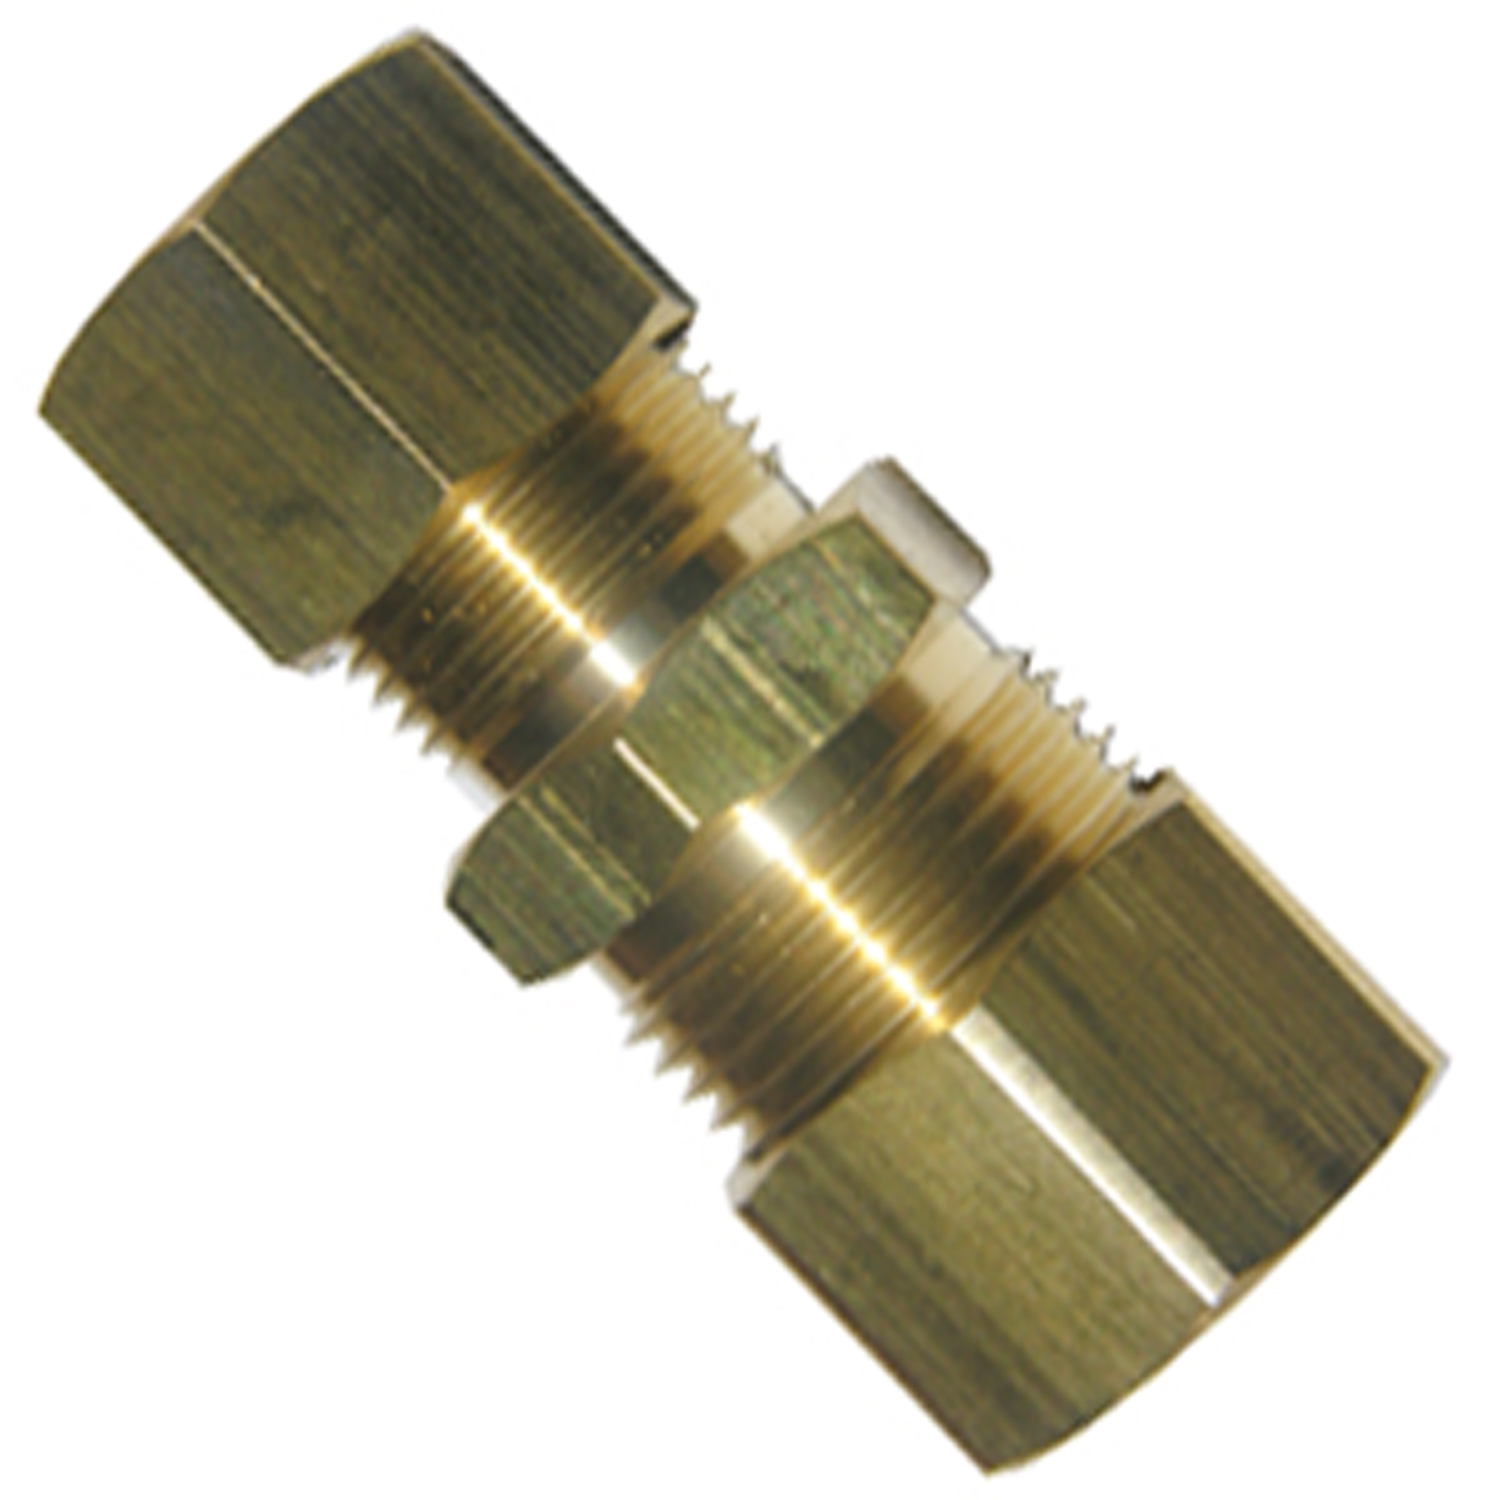 17-6249 Pipe Union, 1/2 in, Compression, Brass, 200 psi Pressure